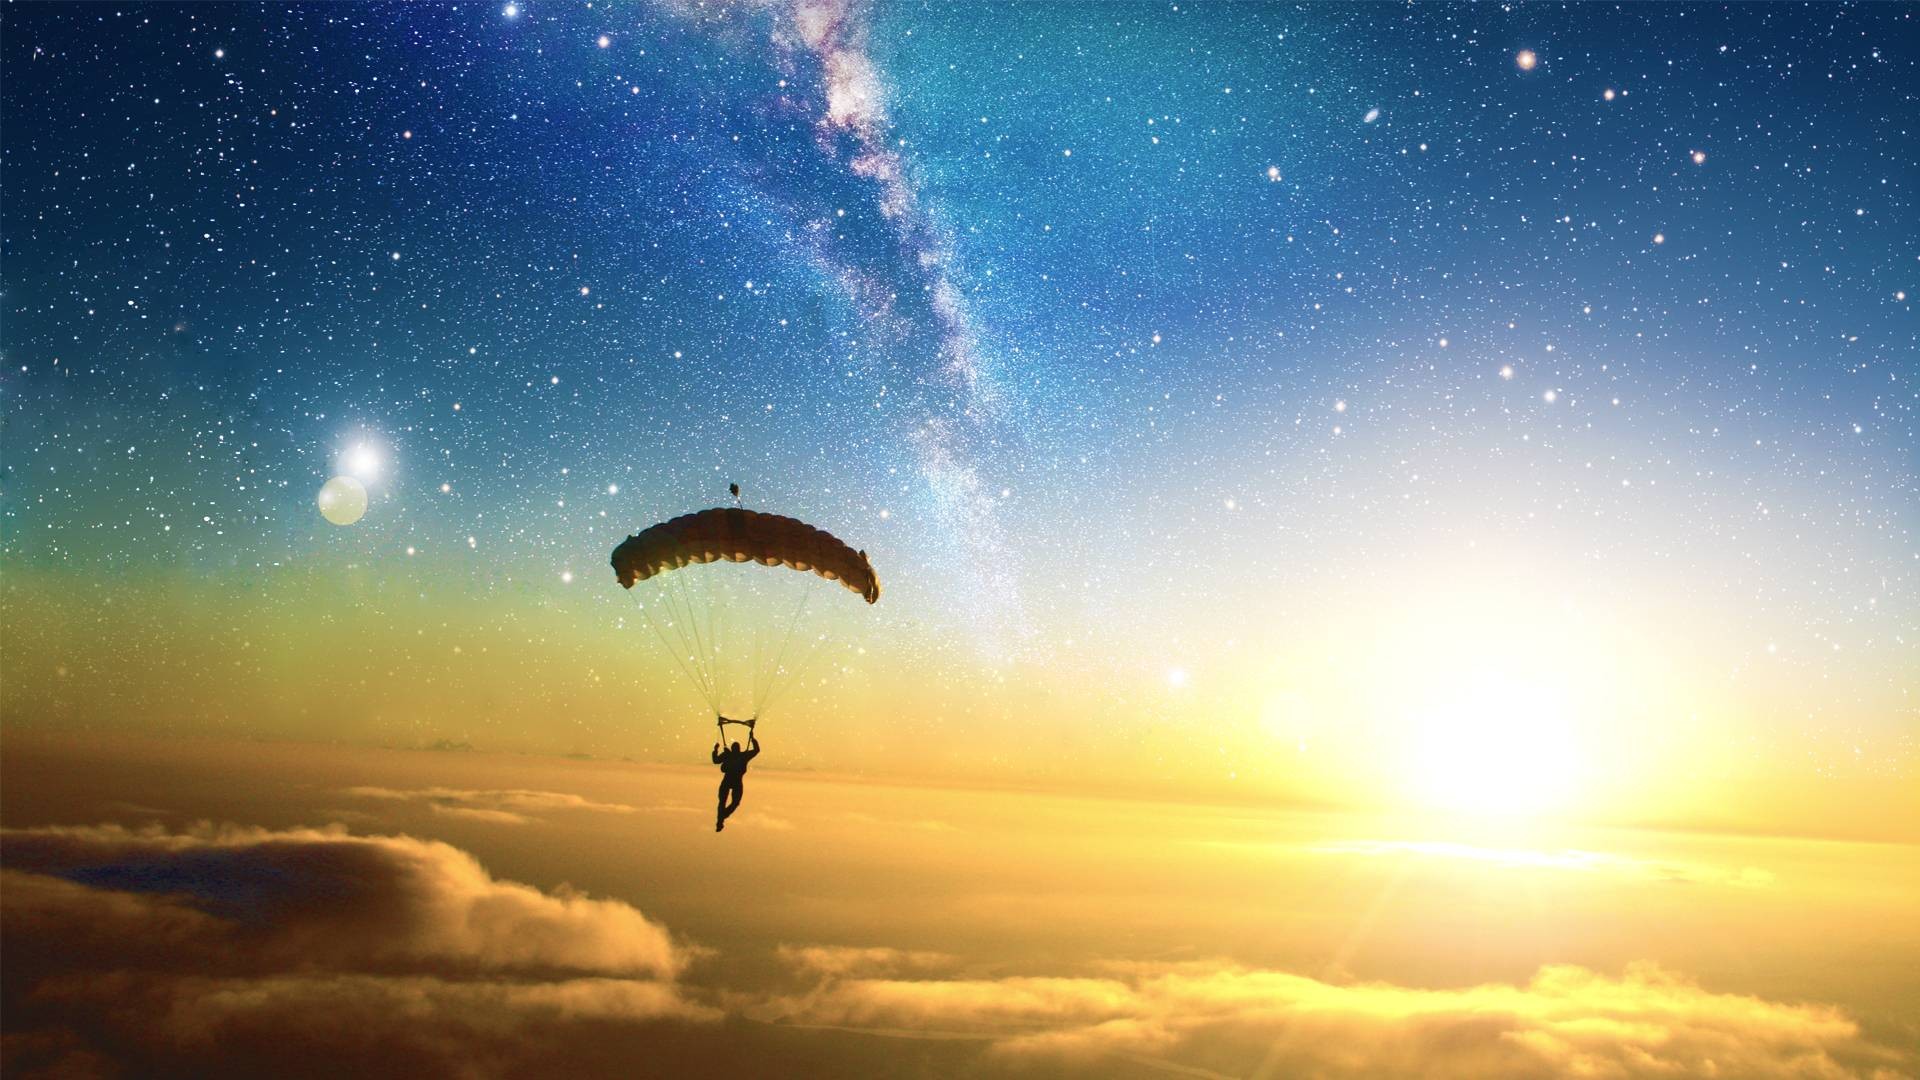 Nền Skydiving Background Images này sẽ khiến bạn liên tưởng đến những trải nghiệm thú vị trong cuộc sống. Với những hình ảnh tuyệt đẹp, đây chắc chắn sẽ là một lựa chọn không thể bỏ qua đối với những người yêu thích thể loại ảnh này.